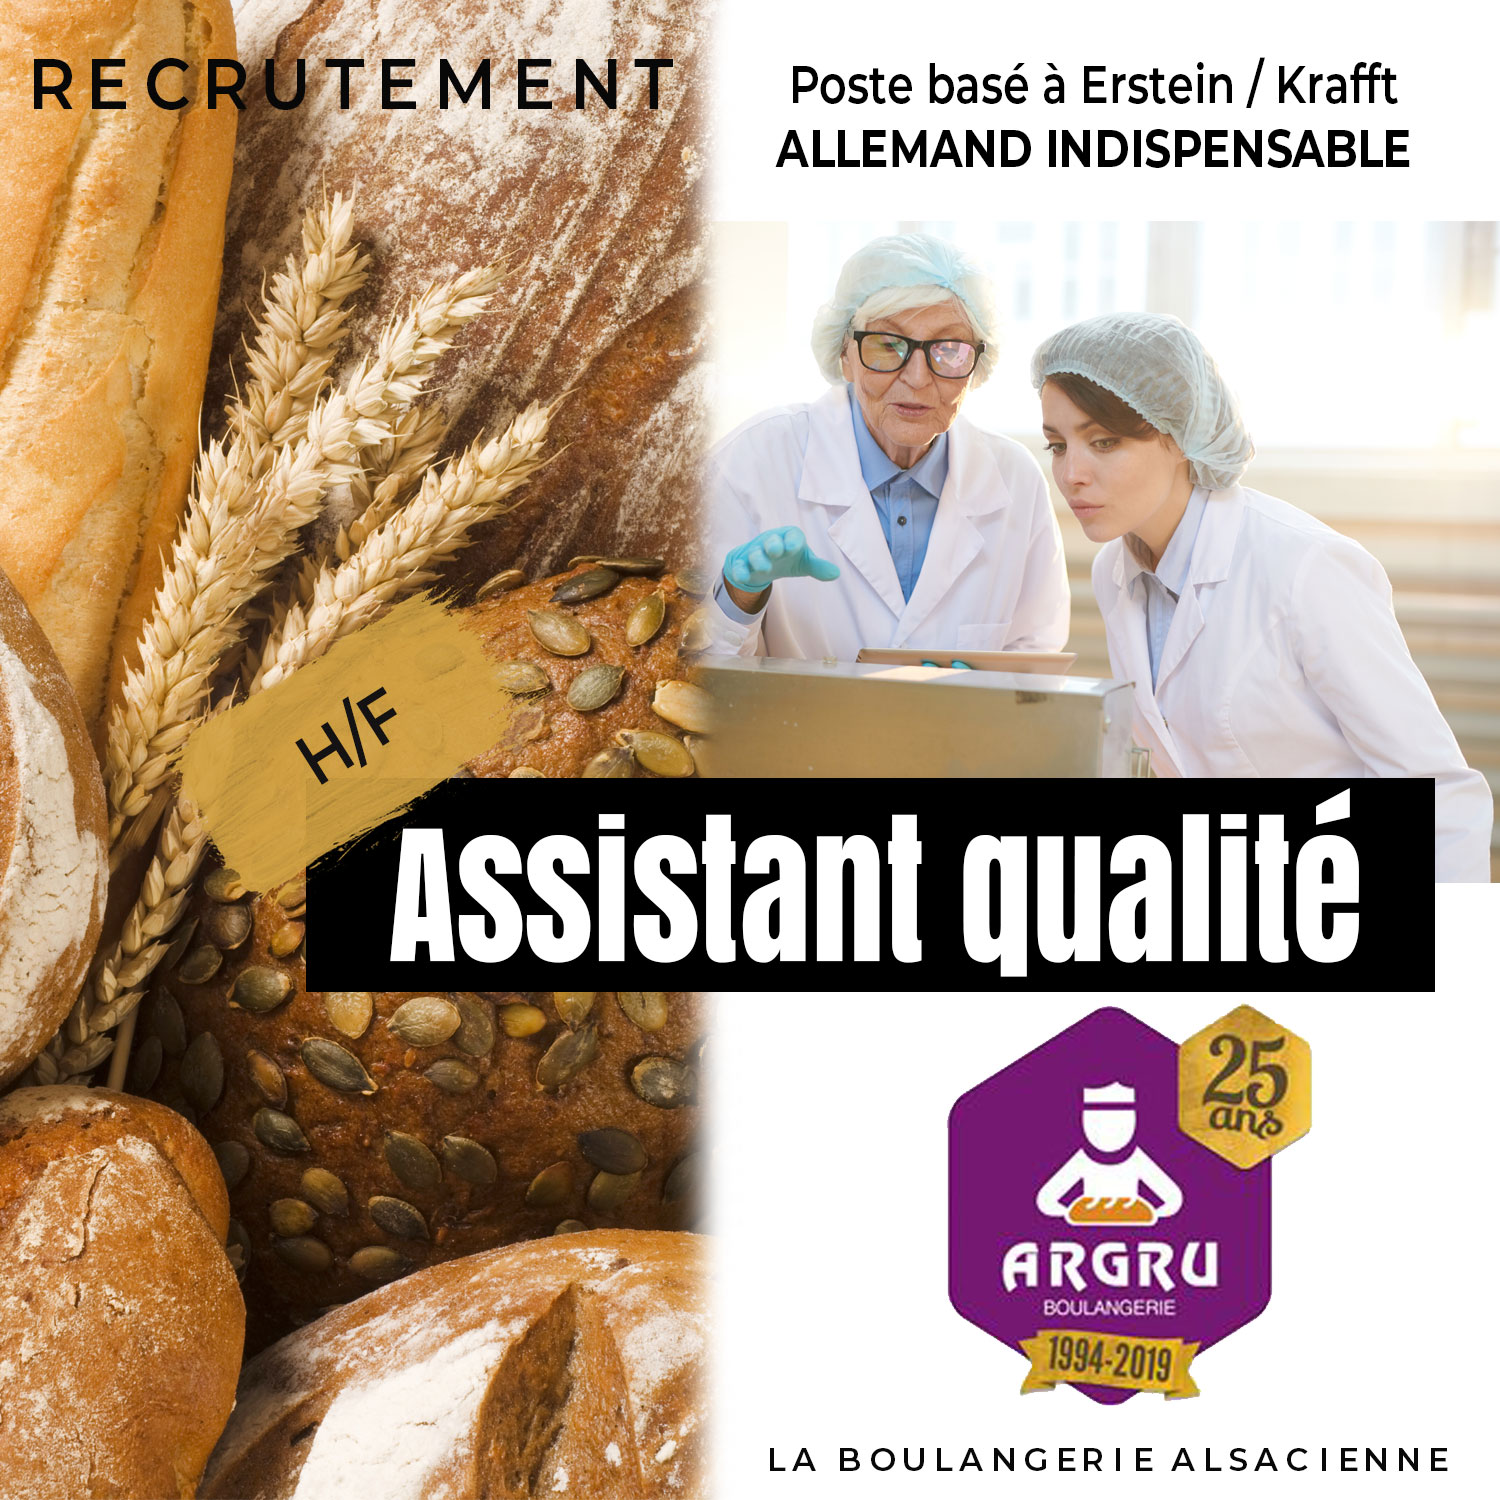 ARGRU recrute Assistant qualité h/f